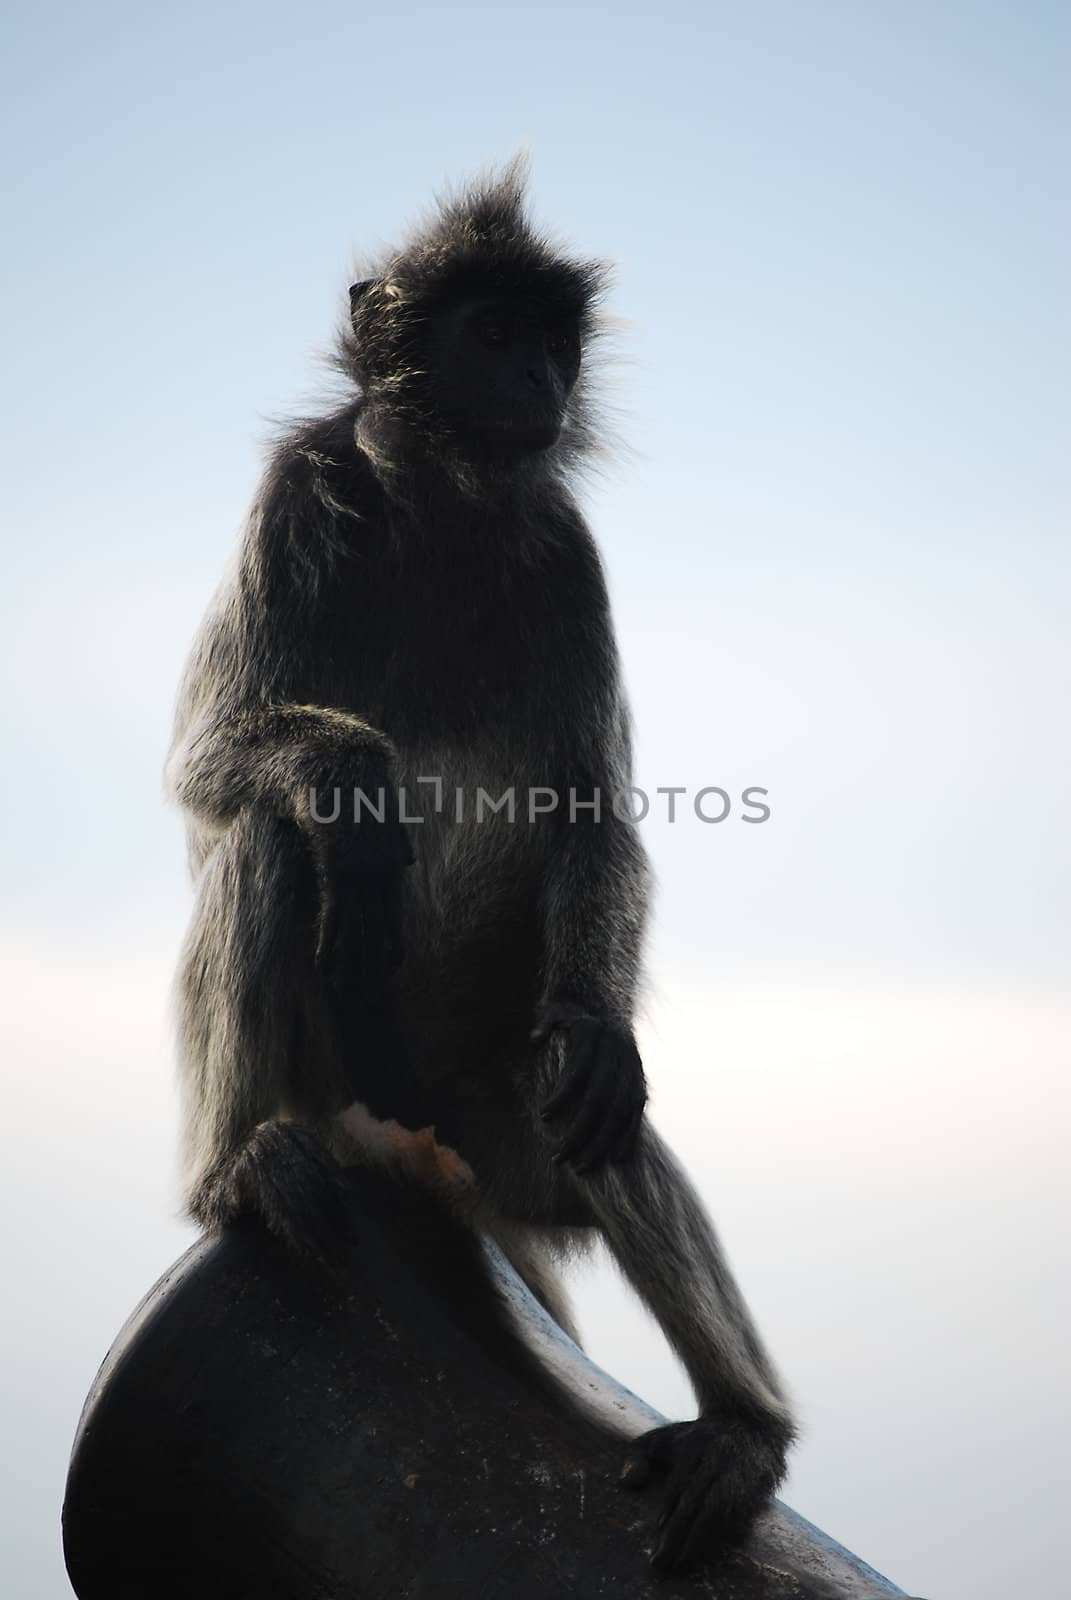 monkey by yuliang11